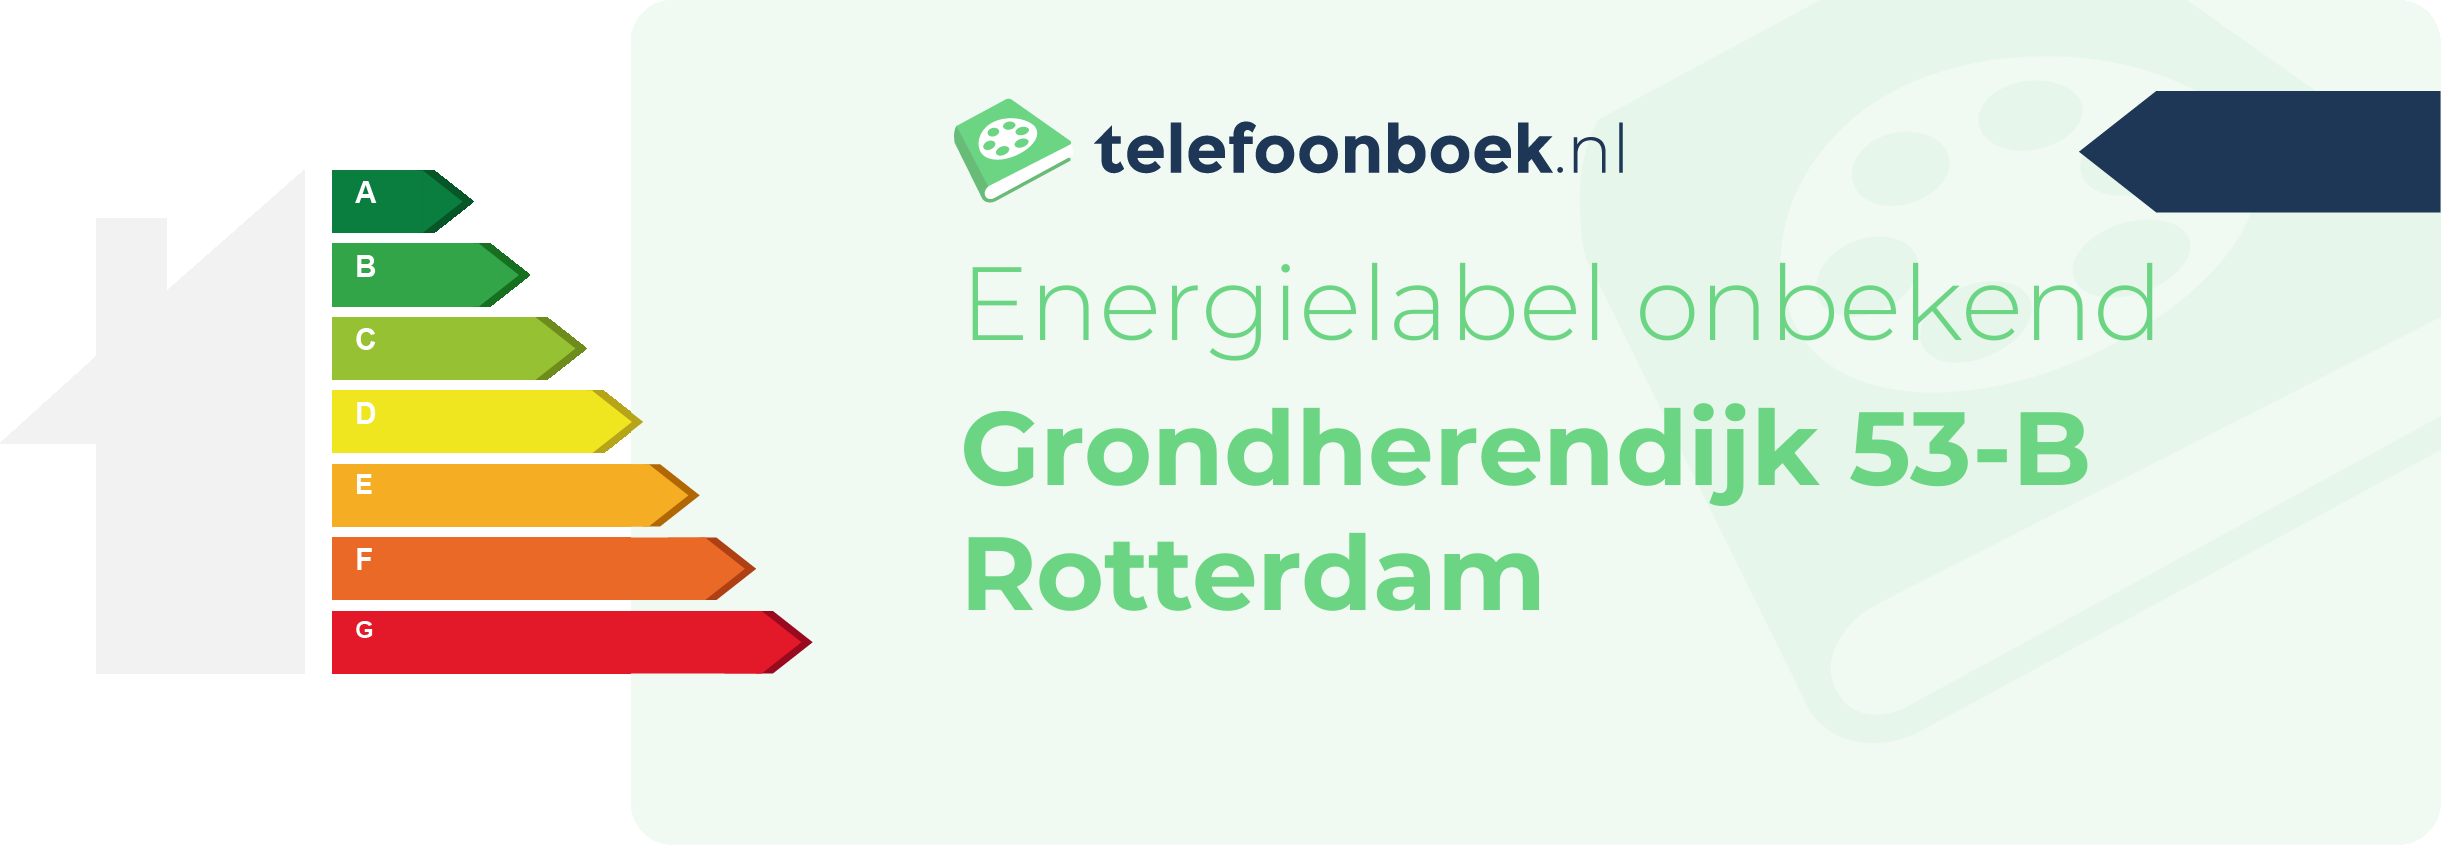 Energielabel Grondherendijk 53-B Rotterdam